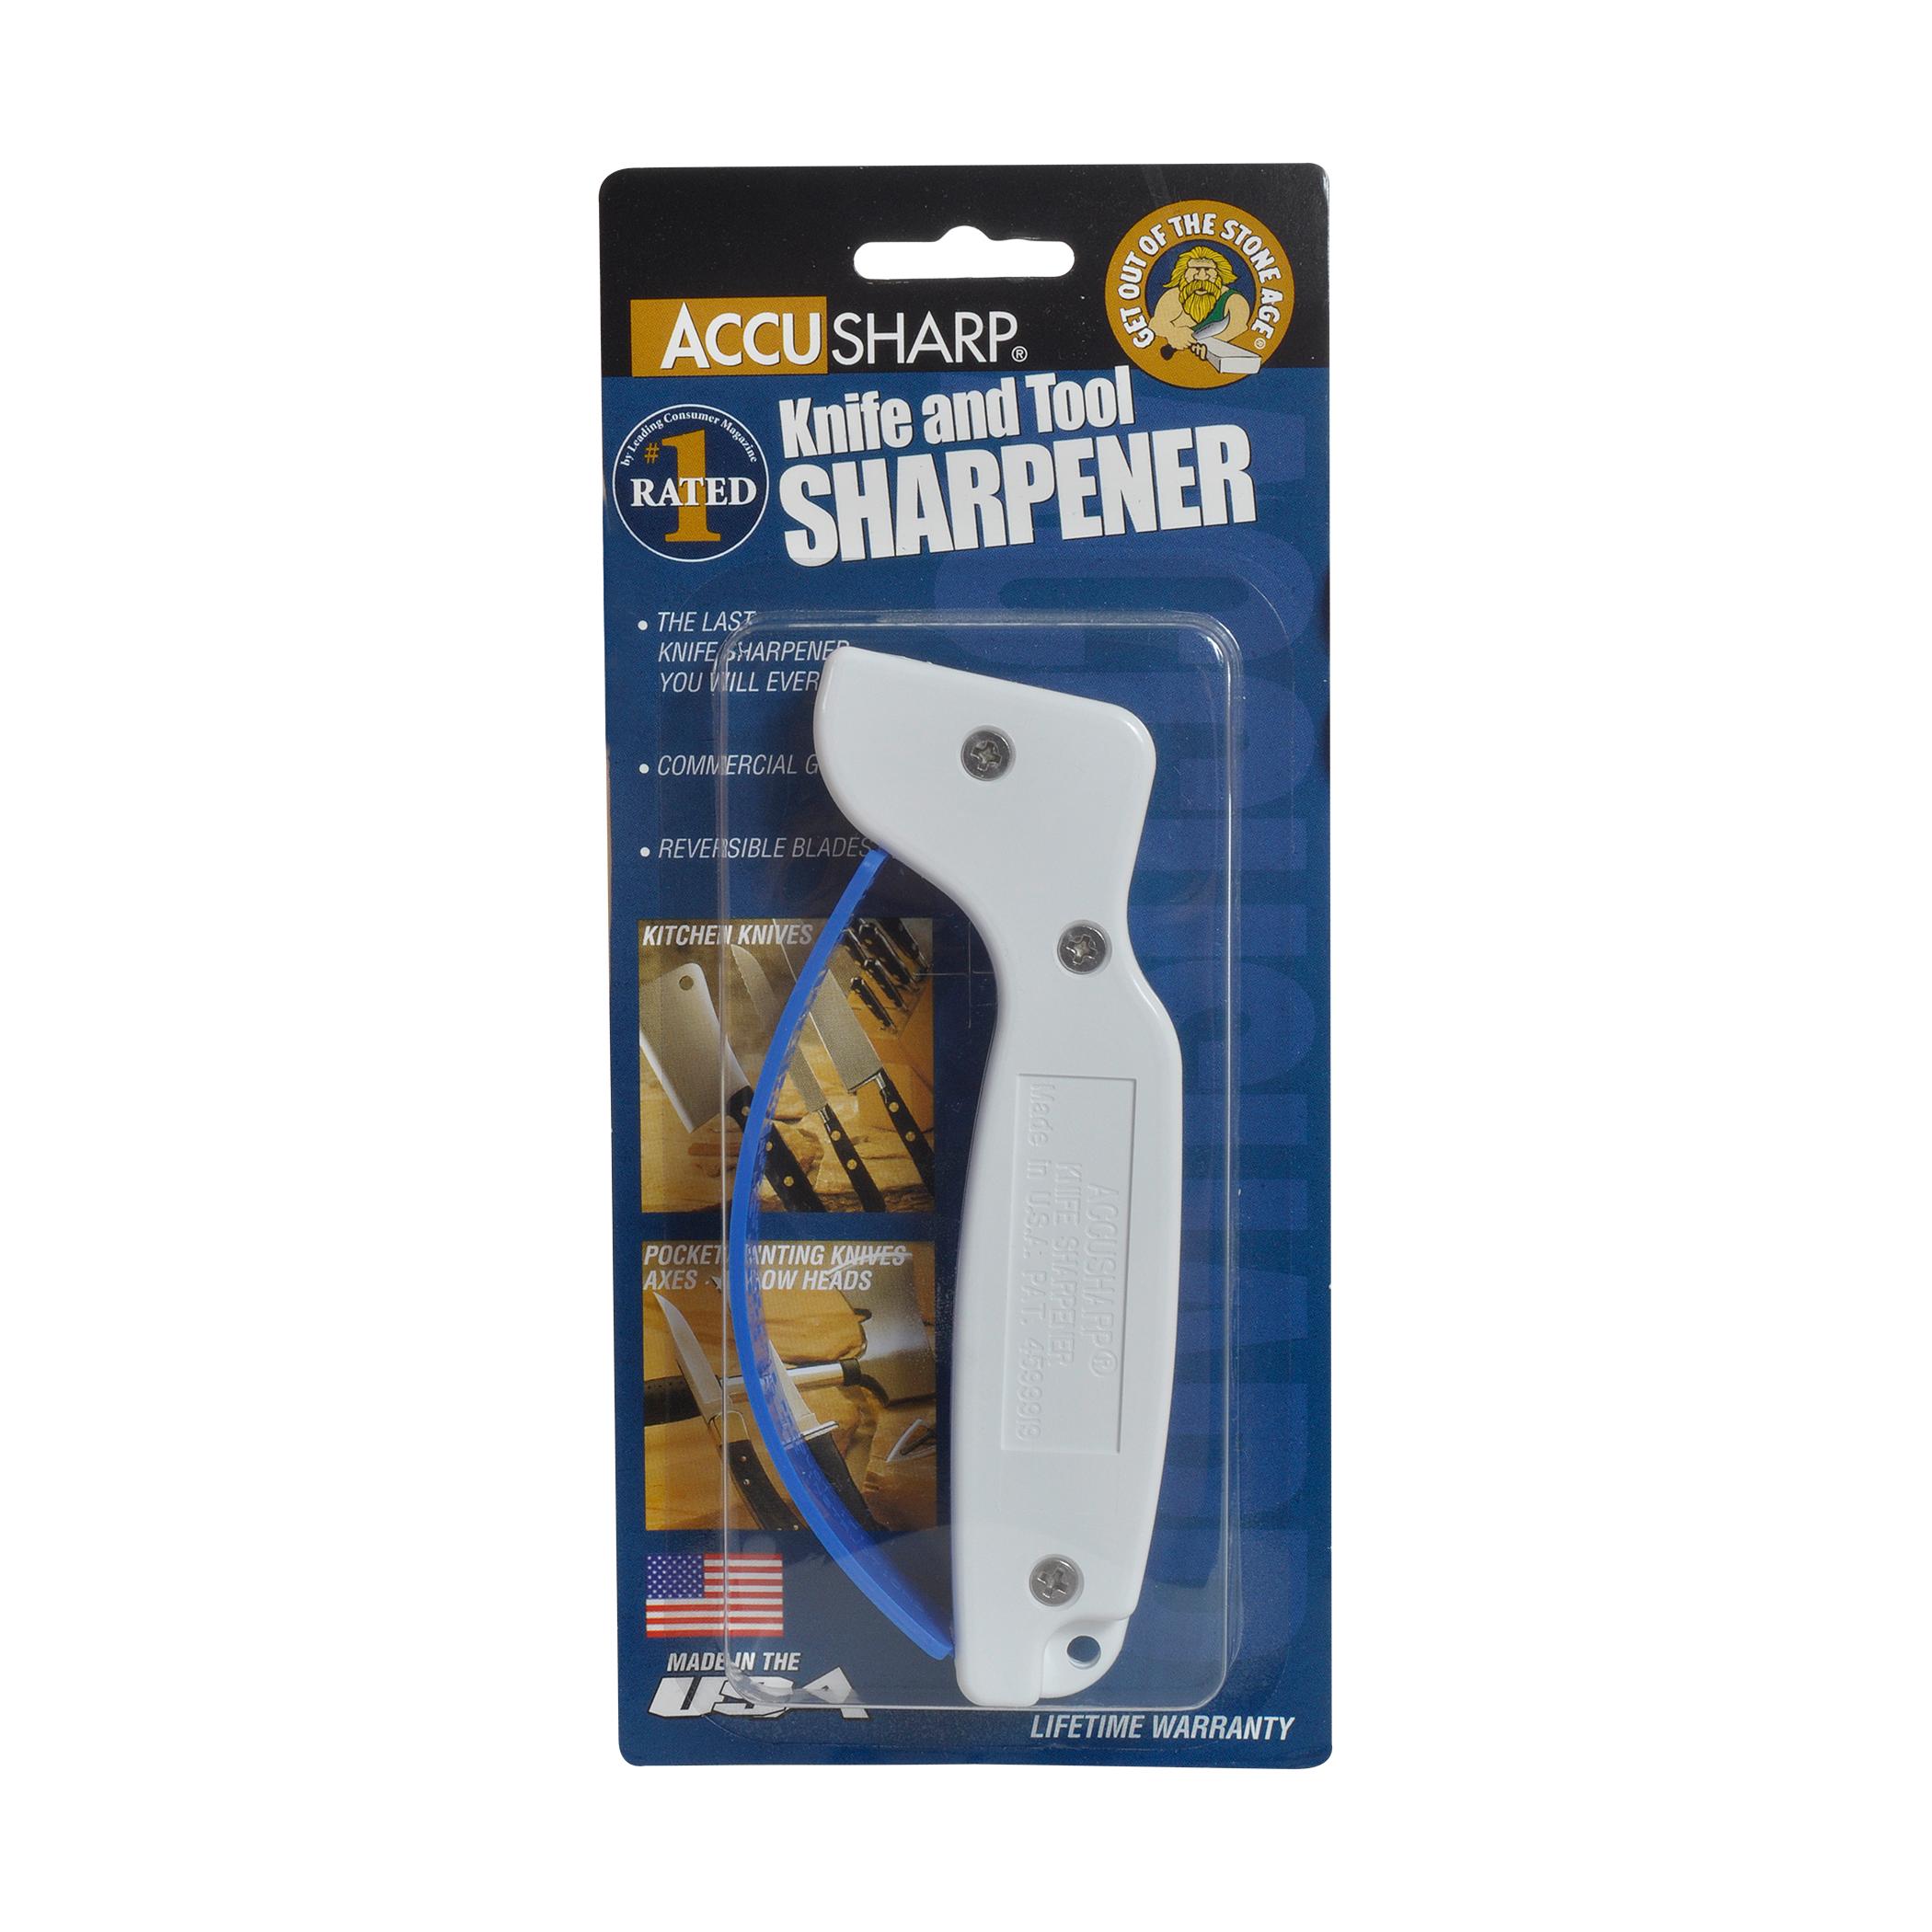 AccuSharp 001C Knife Sharpener